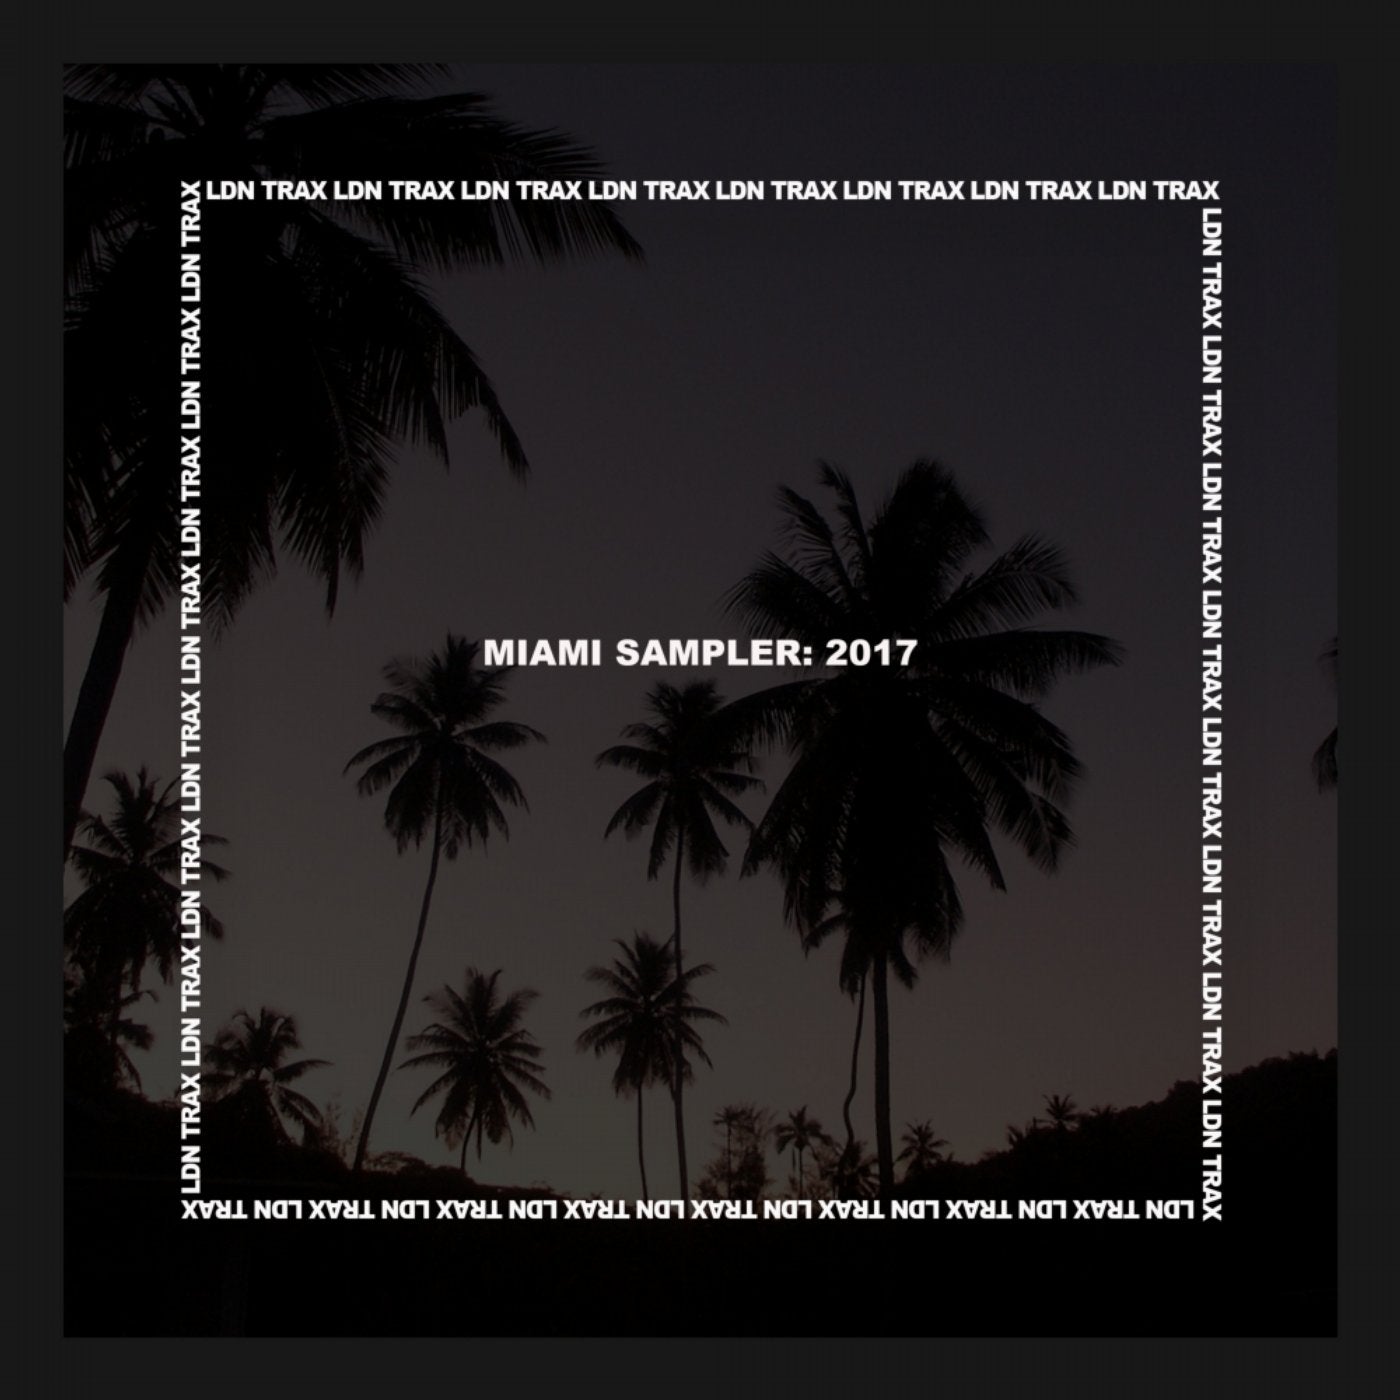 Miami Sampler: 2017